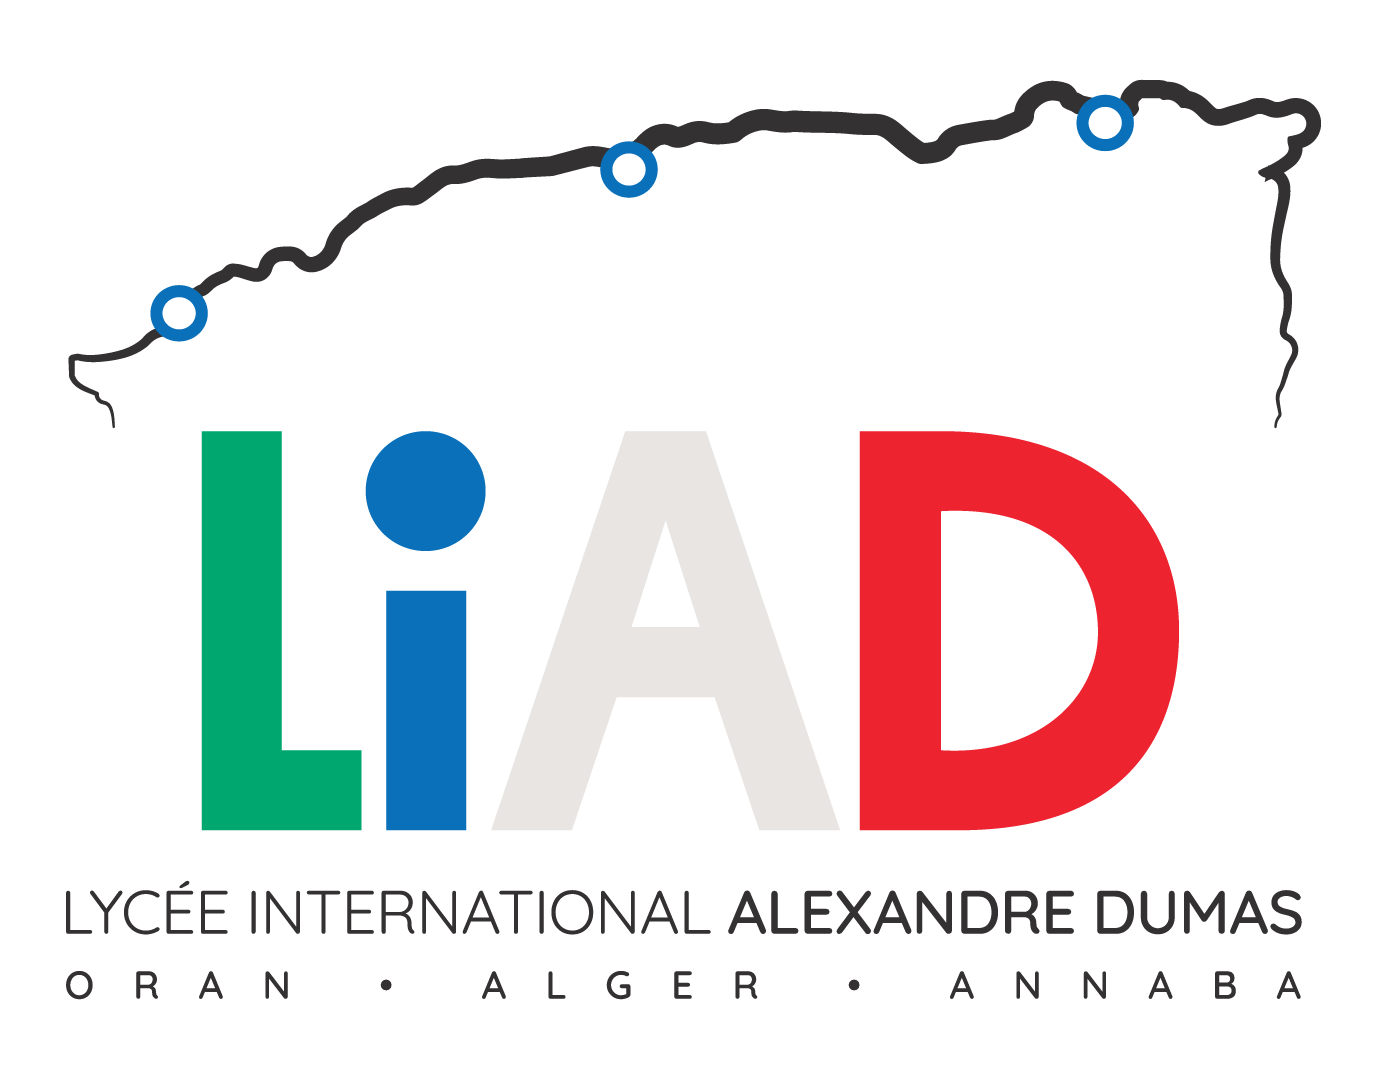 Liad logo